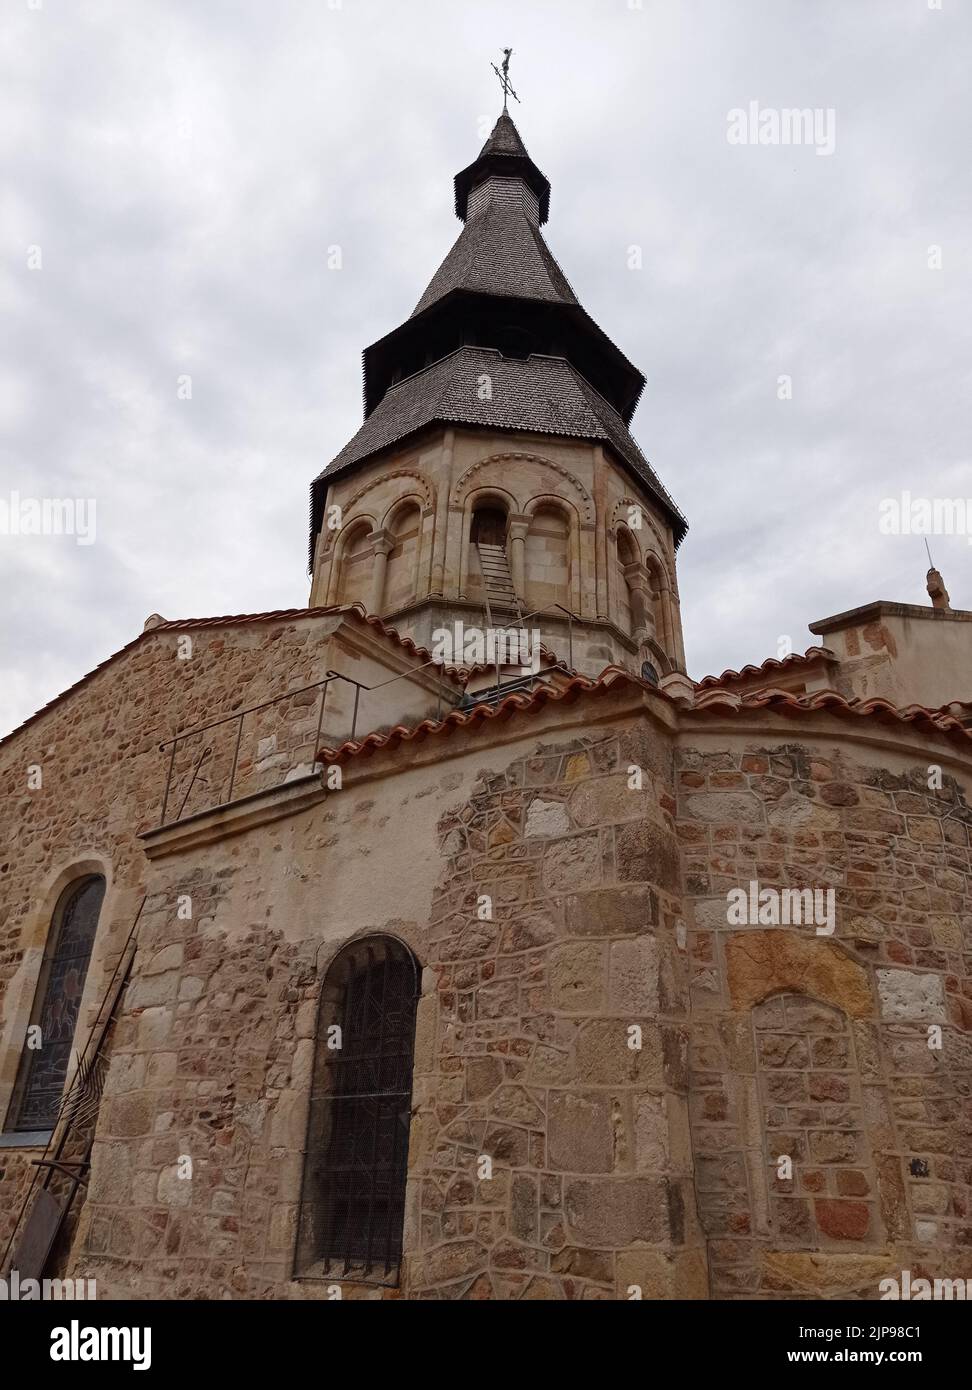 Église Saint Georges de Néris les Bains, vi e siècle, Allier, Francia Foto Stock